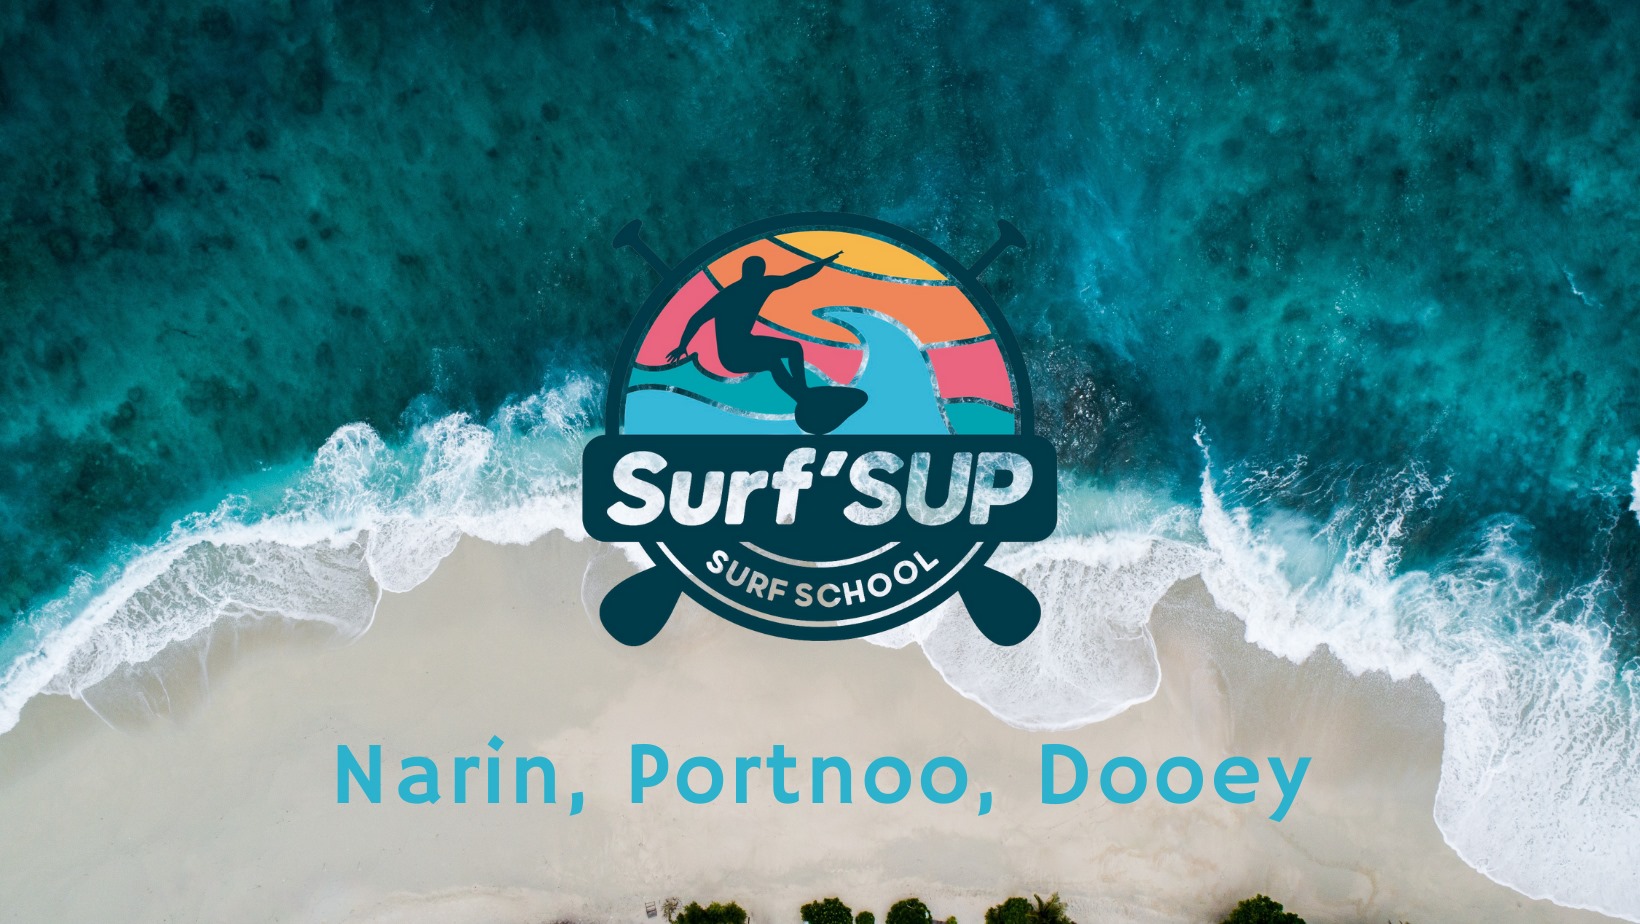 surfsup surf school